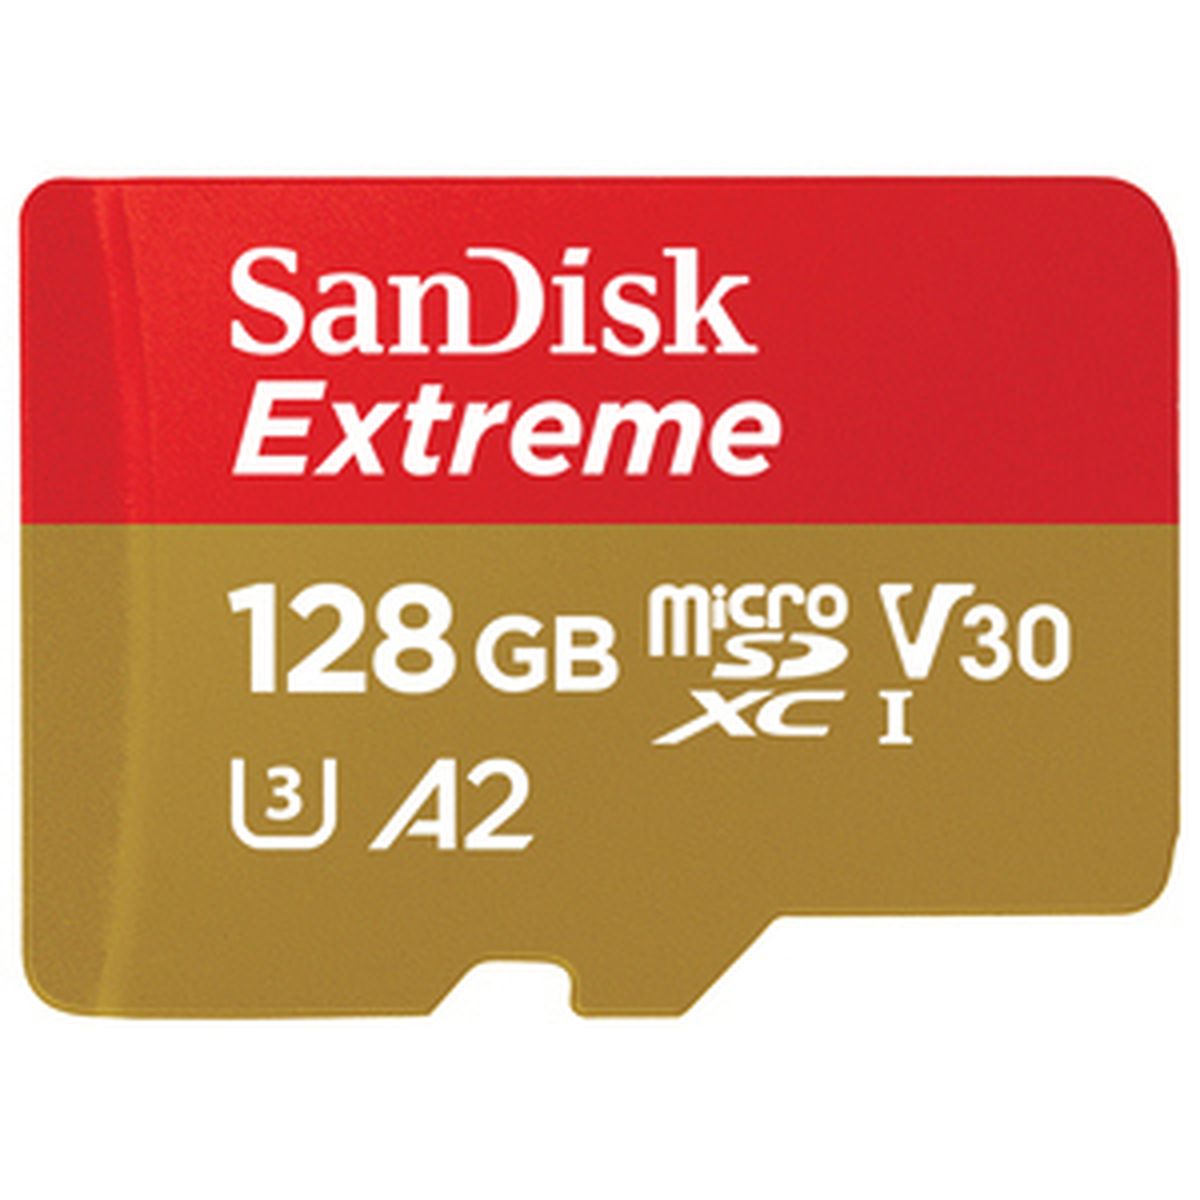 SanDisk Extreme 128GB microSDXC 190 MB/s 